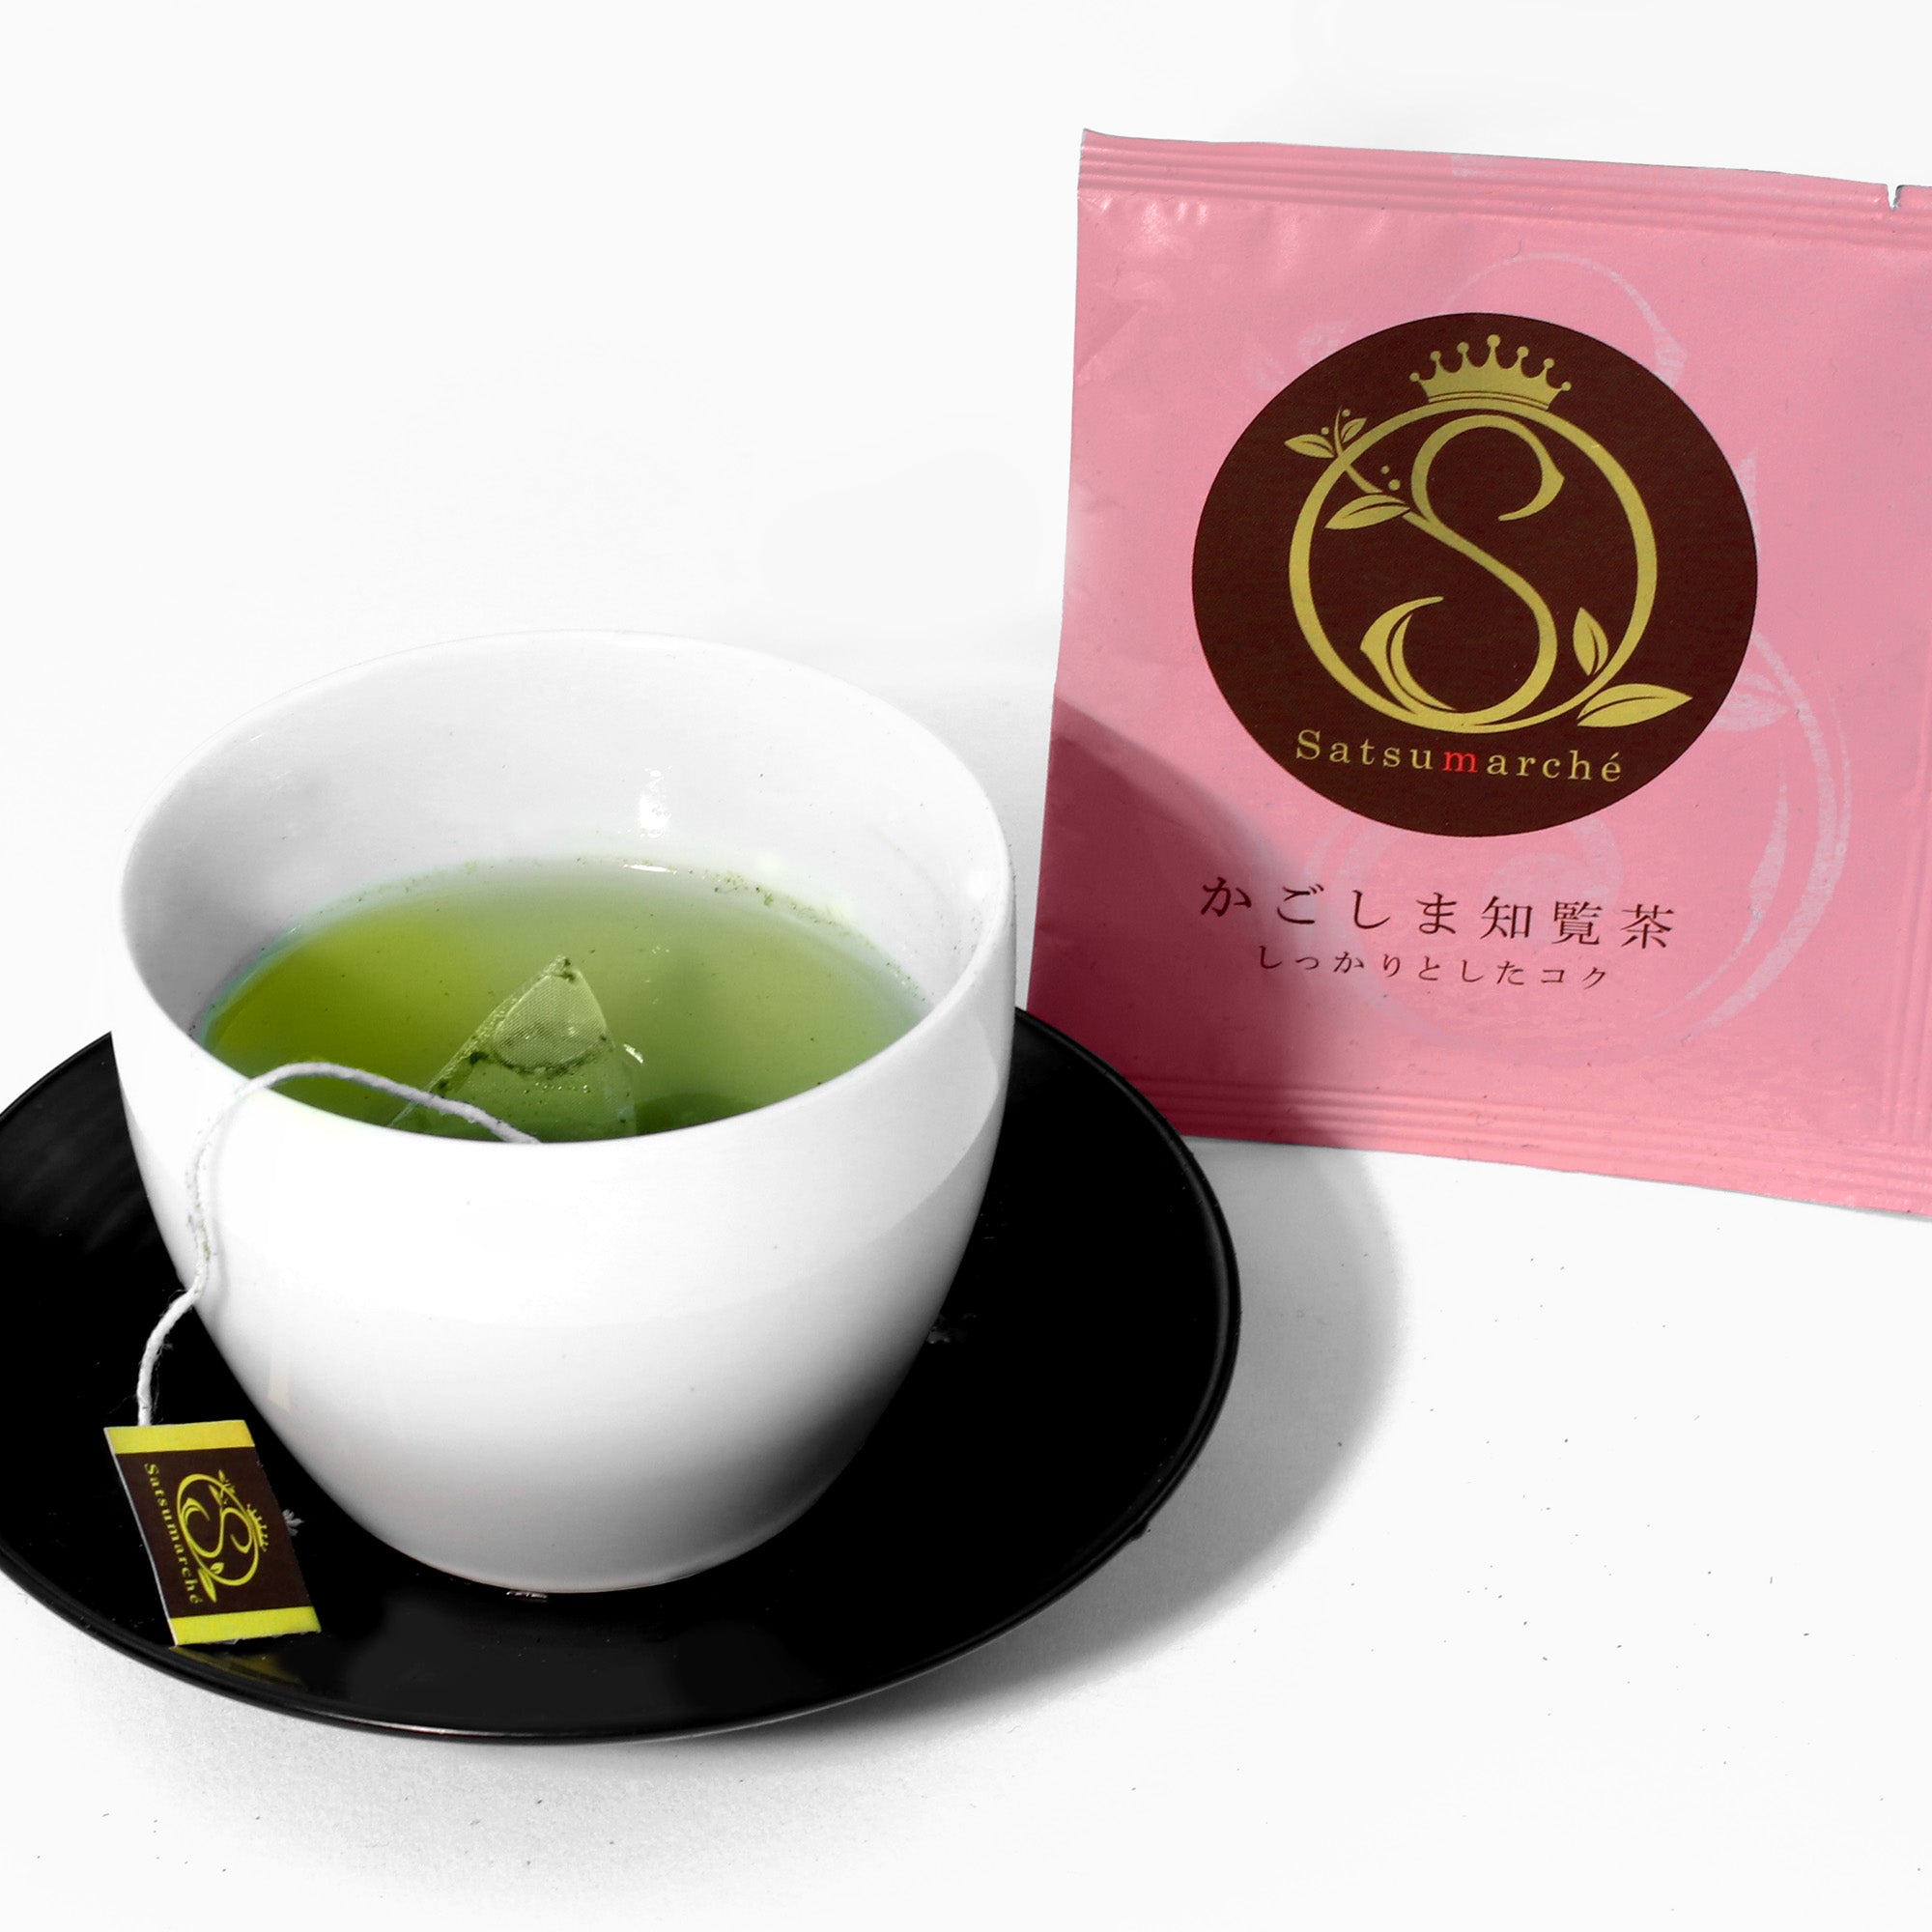 Satsumarche: Kagoshima Chiran Tea, (1 Bag)